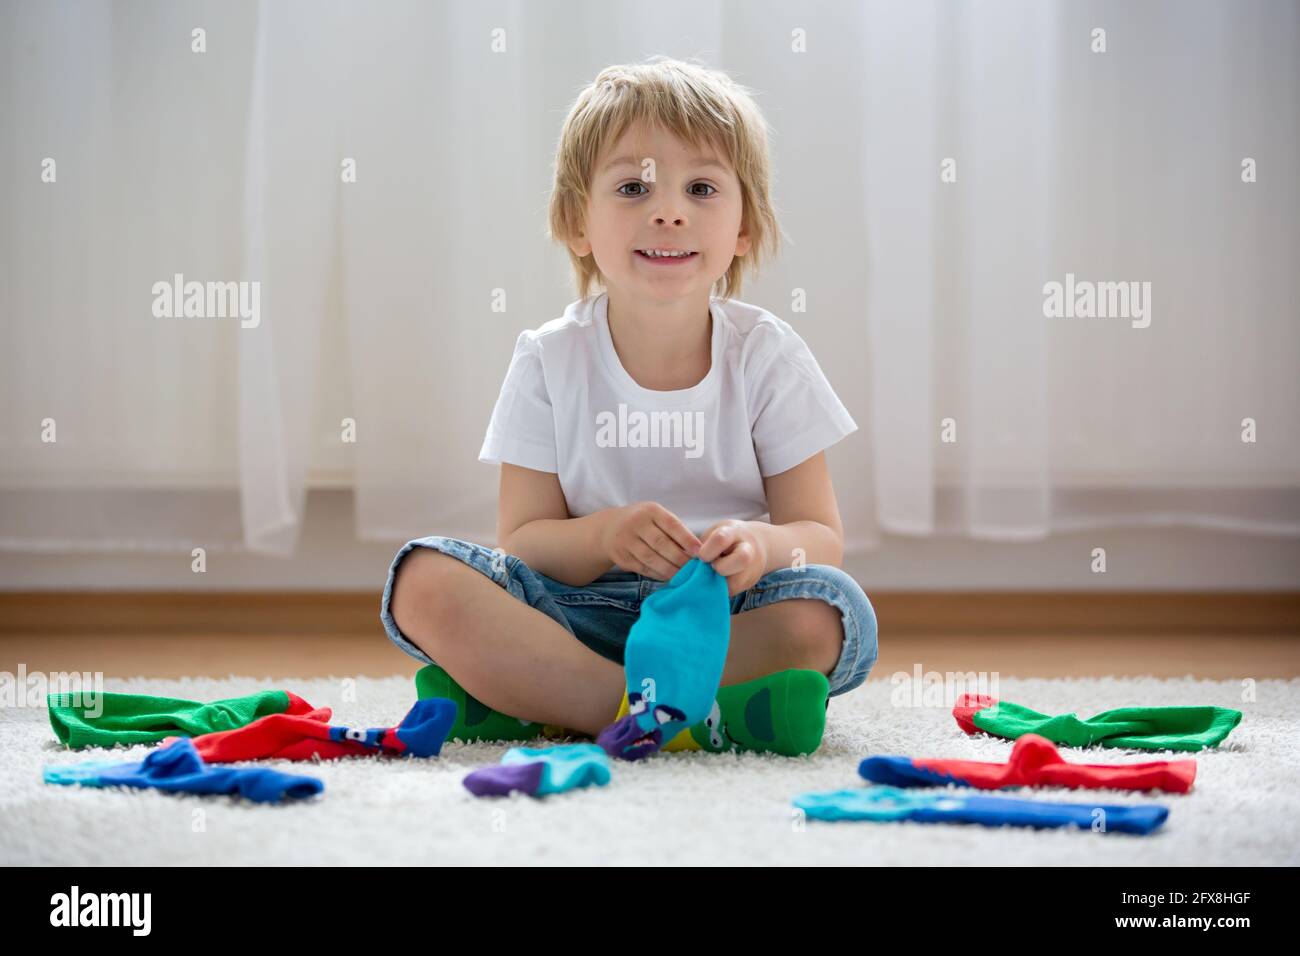 Kinderfüße mit verschiedenen Socken stehen in Reihen, Kinder tragen  verschiedene bunte Socken Stockfotografie - Alamy